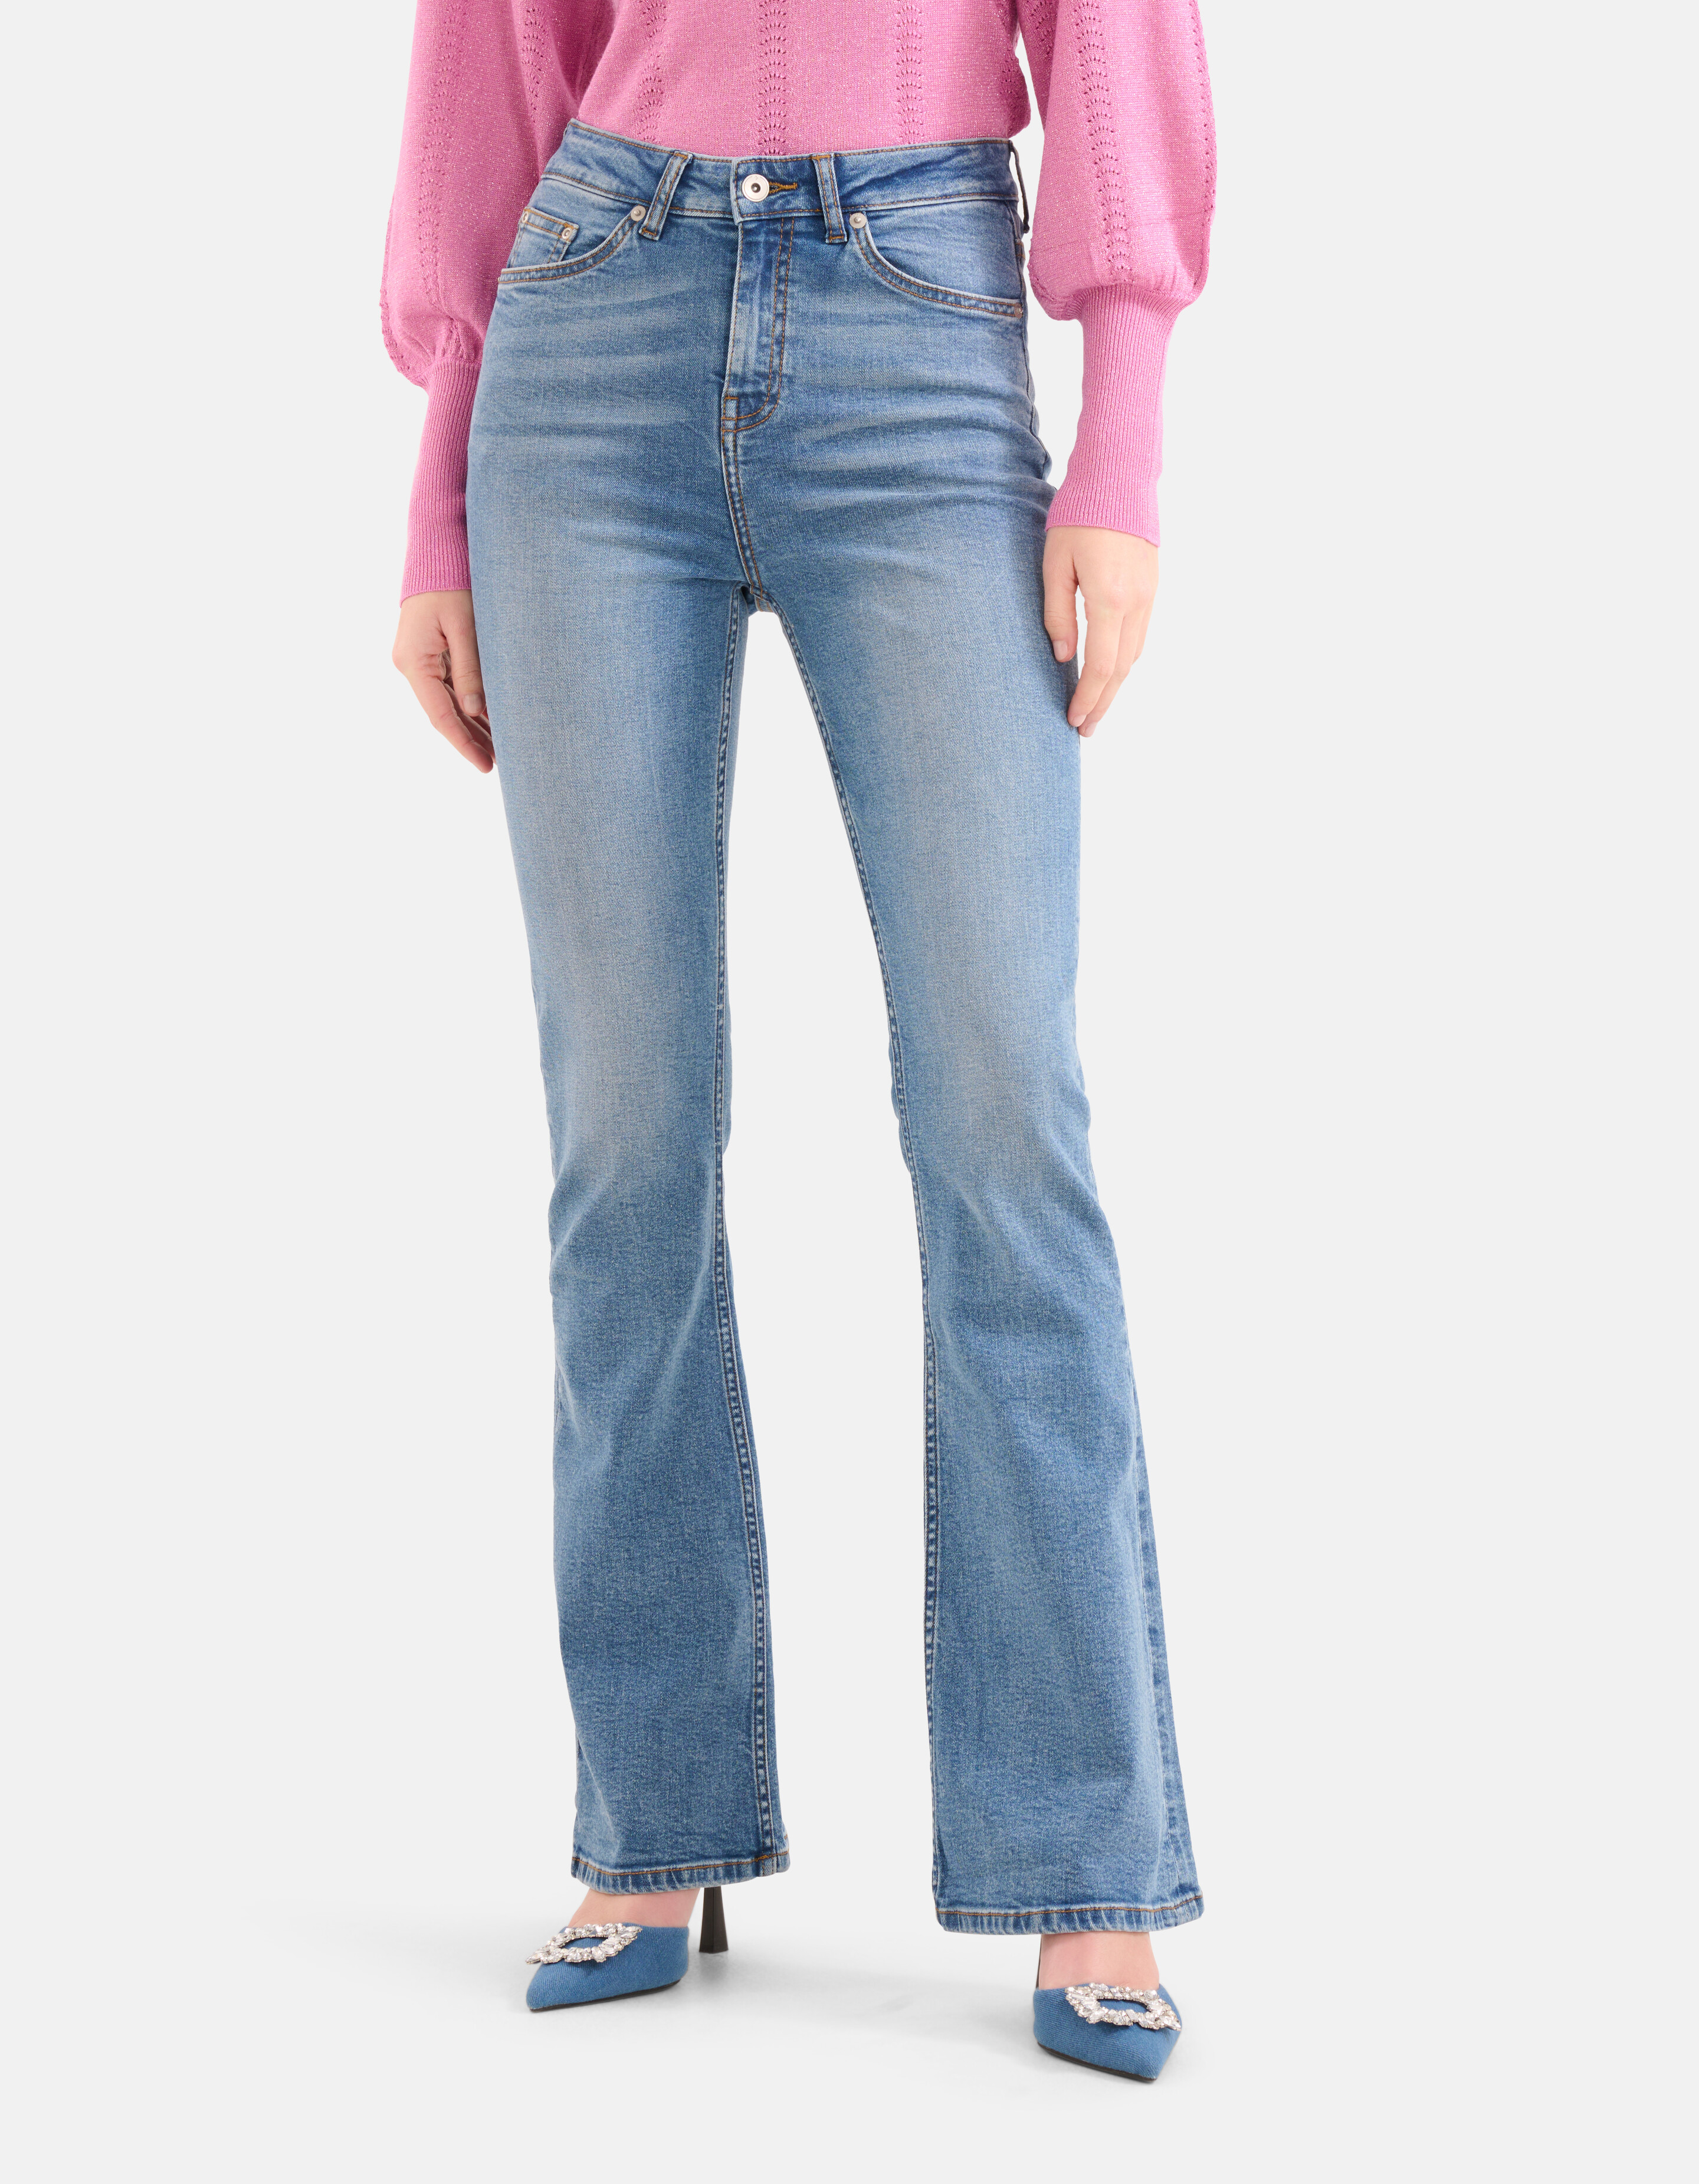 Ausgestellte Denim-Jeans Mediumstone L34 SHOEBY WOMEN